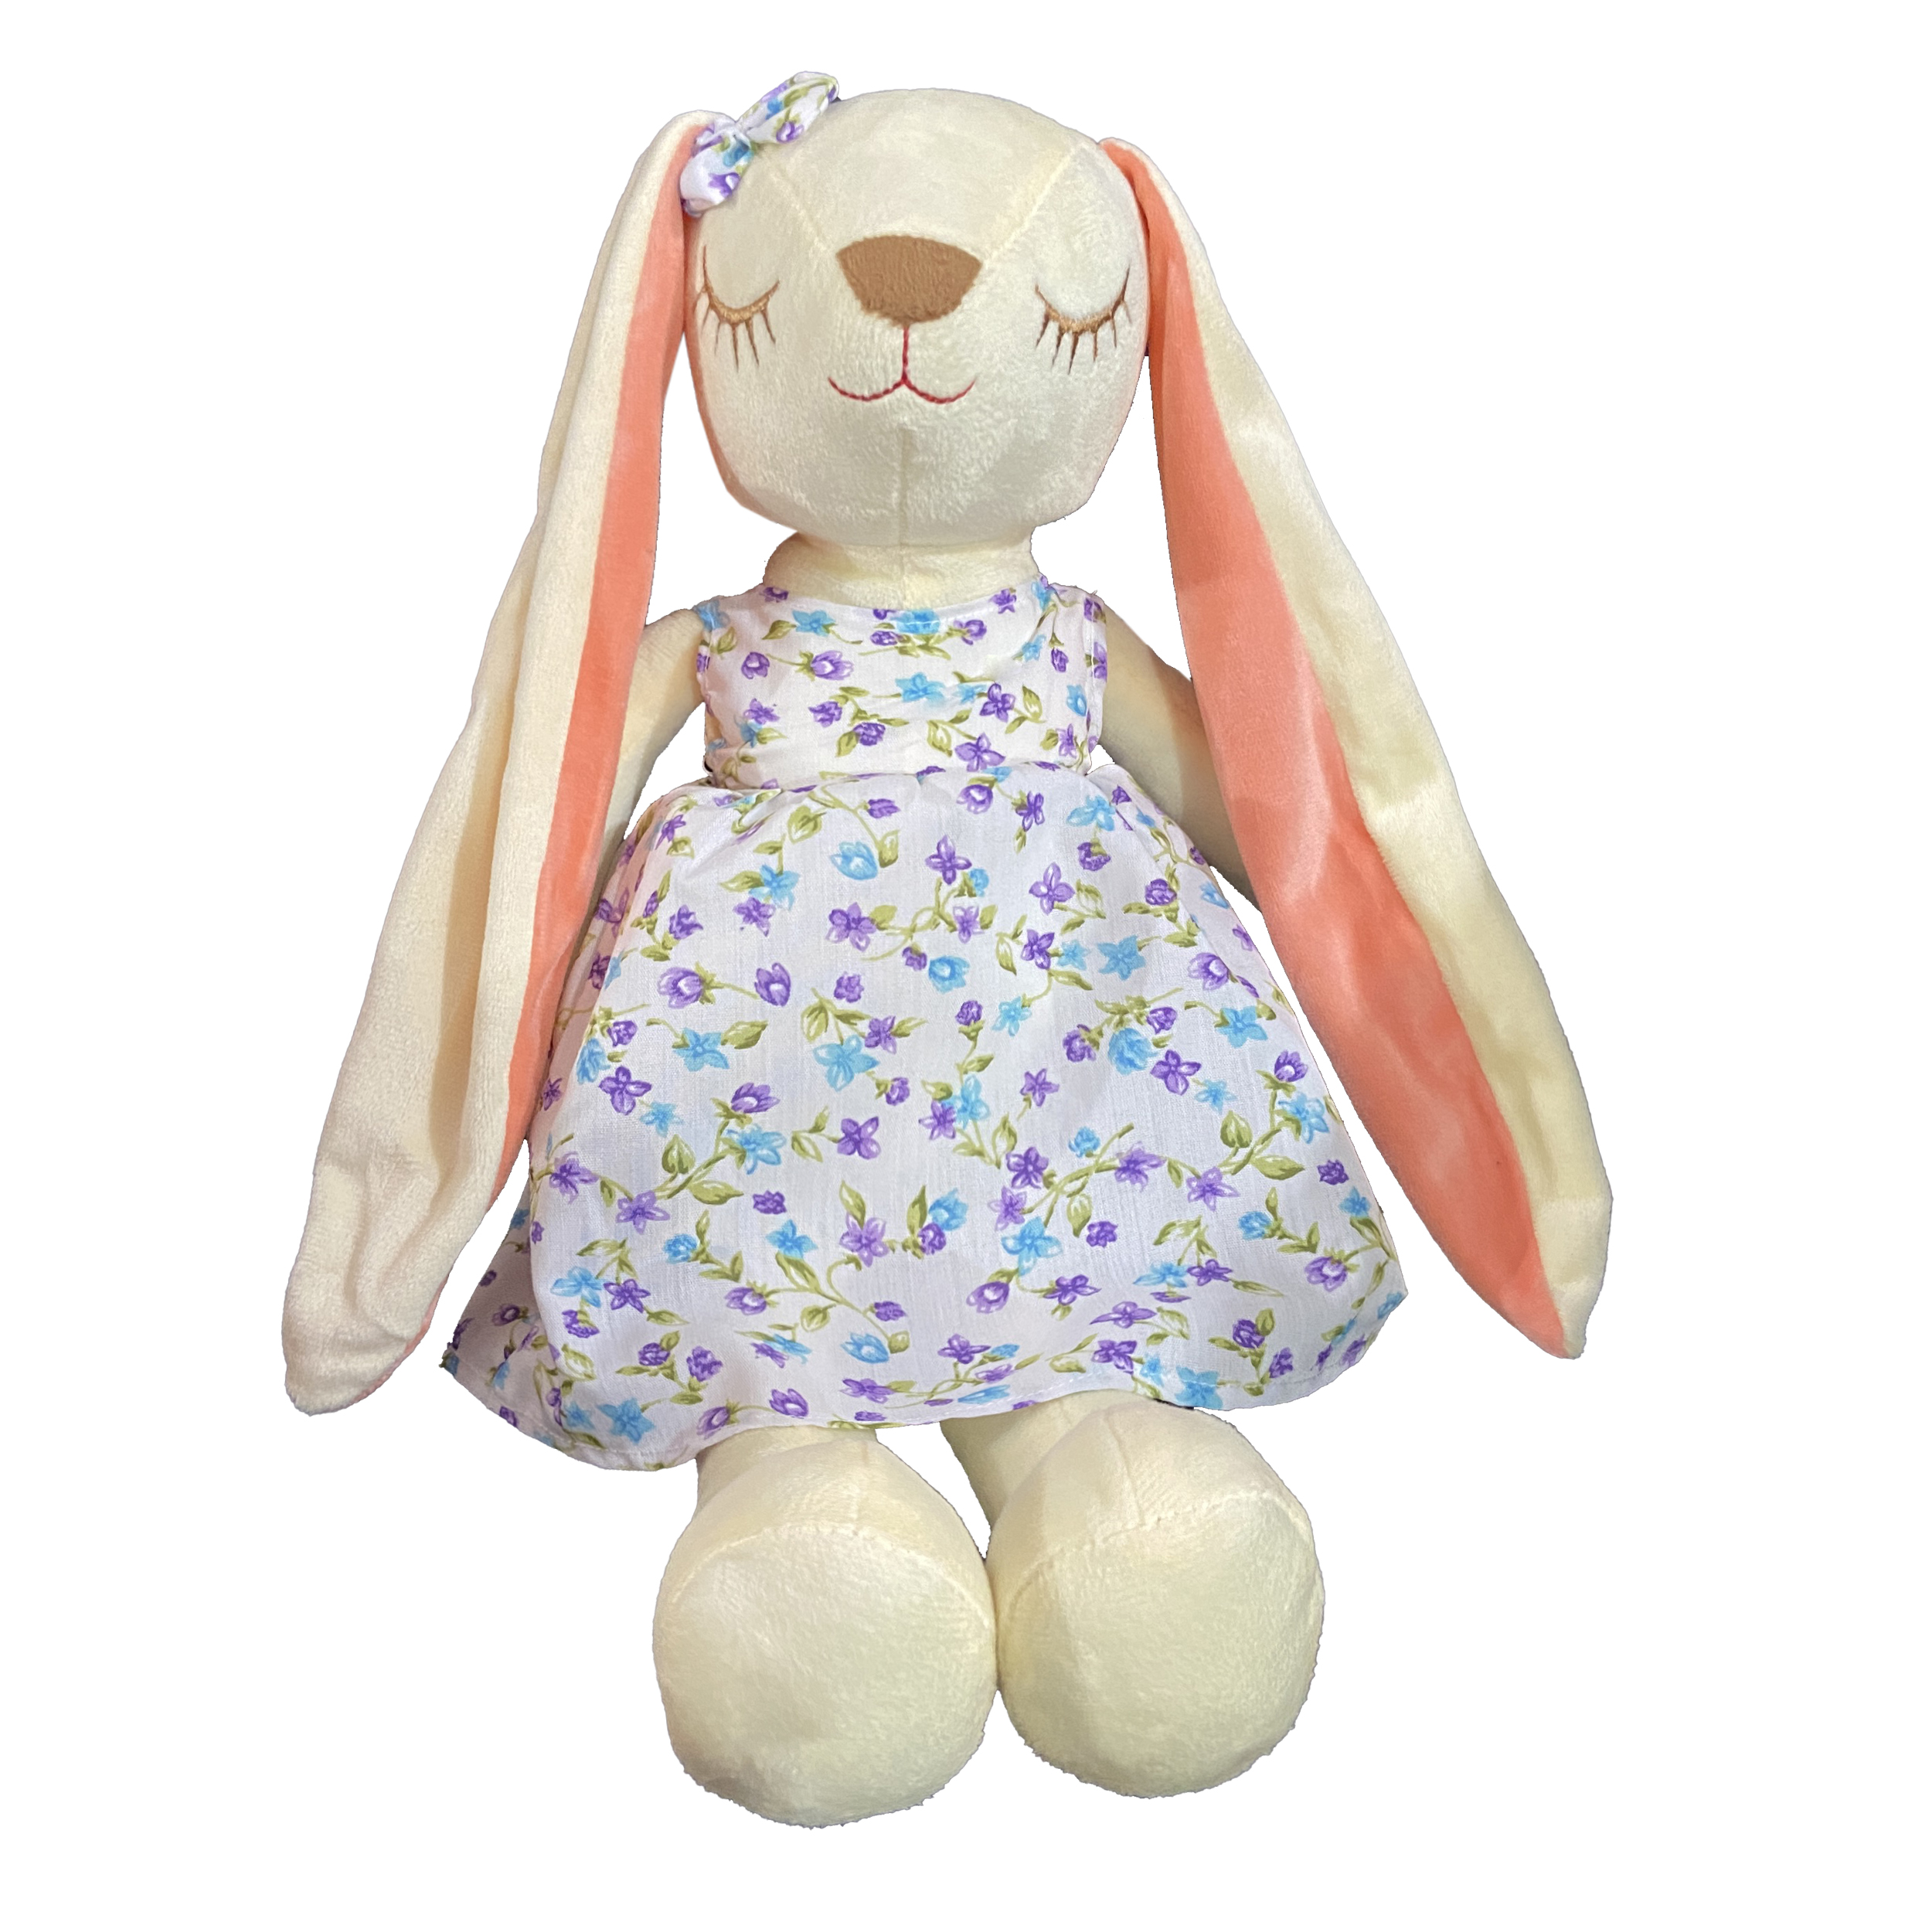 عروسک خرگوش لباس گلی پشم بسته 45 سانتی متر کد 15746